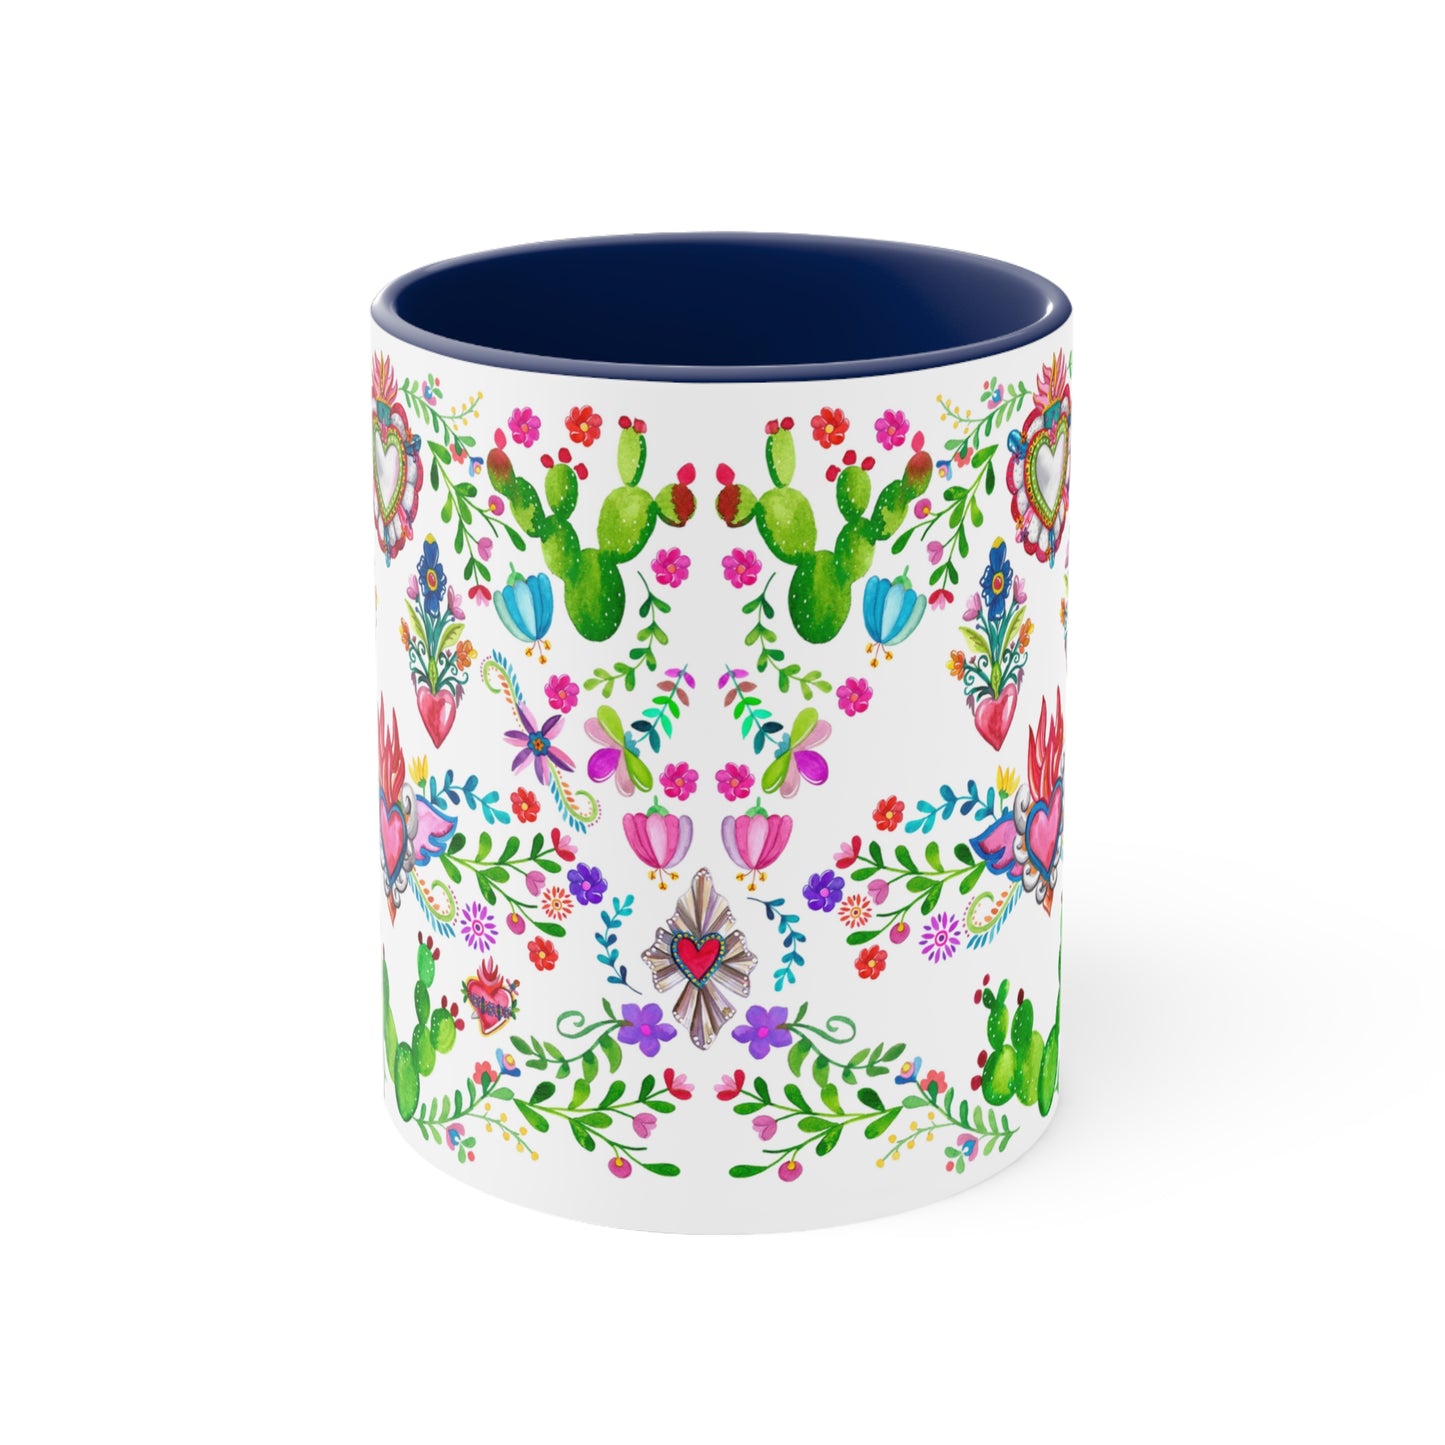 Sacred hearts and cactus Coffee Mug, 11oz. Mexican folk art mug